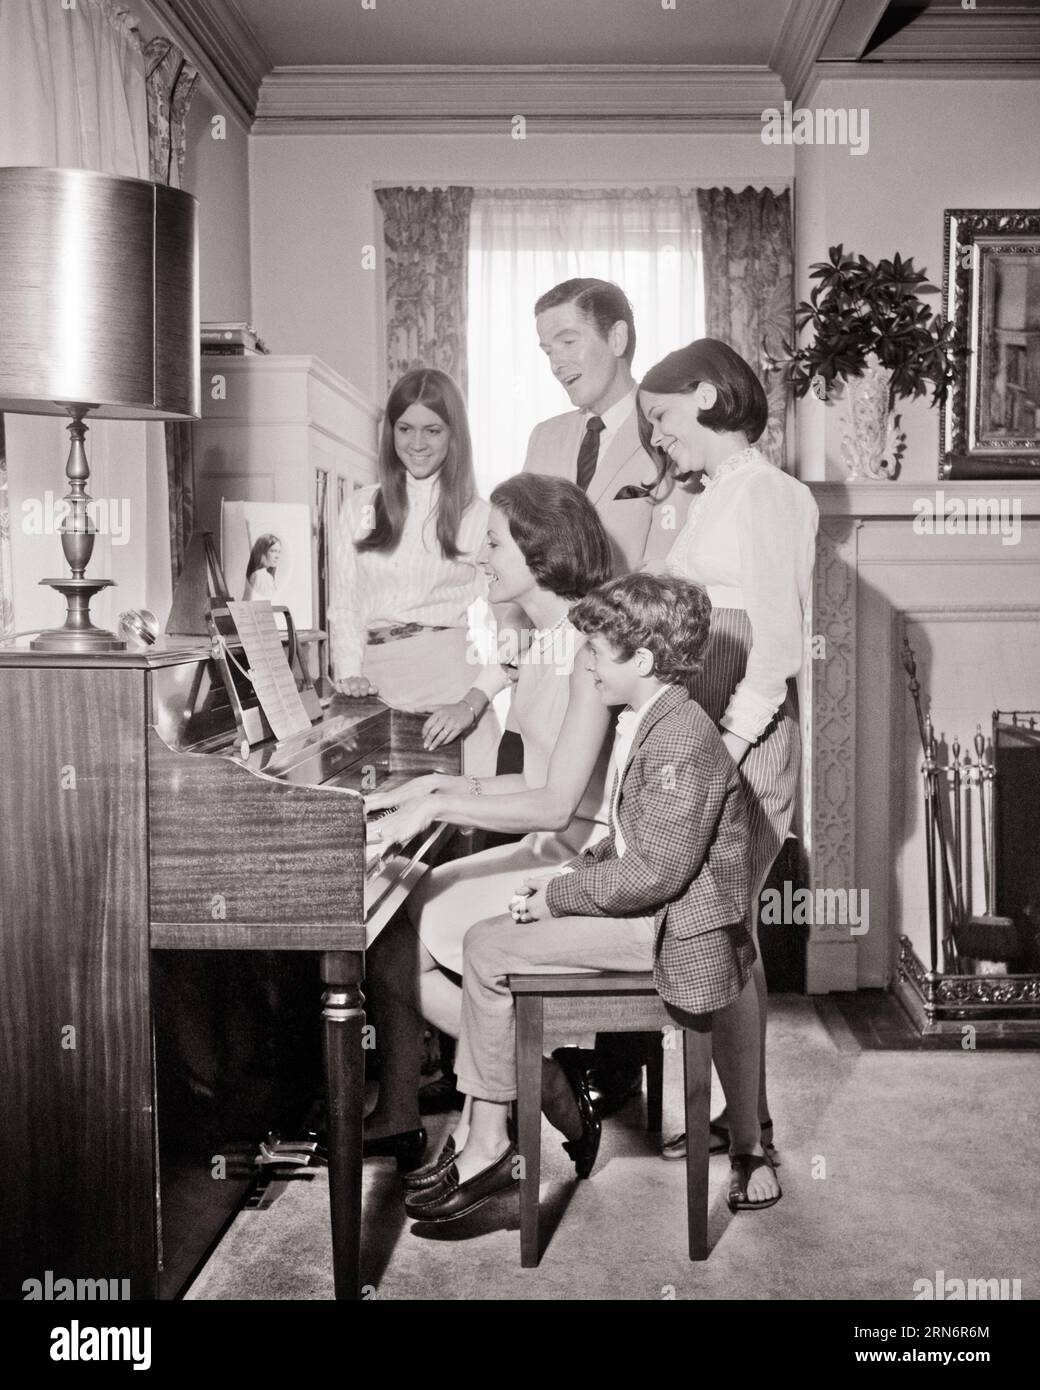 FAMILLE DES ANNÉES 1960 DE 5 CHANTANT AUTOUR DU SALON PIANO MÈRE JOUANT DU PIANO ET 3 ENFANTS ET DAD CHANTANT - M8991 HARS DAD MOM À L'INTÉRIEUR MUSICAL NOSTALGIQUE AUTOUR DE PAIRE SUBURBAINES URBAINES VIEUX TEMPS OCCUPÉ NOSTALGIE FRÈRE VIEILLE MODE SŒUR CHANTEUSE DE COMMUNICATION JUVÉNILE JEUNE ADULTE CHANTEURS DE TRAVAIL D'ÉQUIPE FILS FAMILLES JOIE STYLE DE VIE MUSICIEN SONORE FEMMES MARIÉES 5 FRÈRES ÉPOUX ÉPOUX ÉPOUX ACCUEIL VIE COPIE ESPACE AMITIÉ DEMI-LONGUEUR DAMES FILLES PERSONNES INSPIRATION MÂLES ADOLESCENTE DIVERTISSEMENT FRÈRES SŒURS PÈRES B&W PARTENAIRE ACTIVITÉ BONHEUR BIEN-ÊTRE LOISIRS ET CHANSON D'EXCITATION DADS Banque D'Images